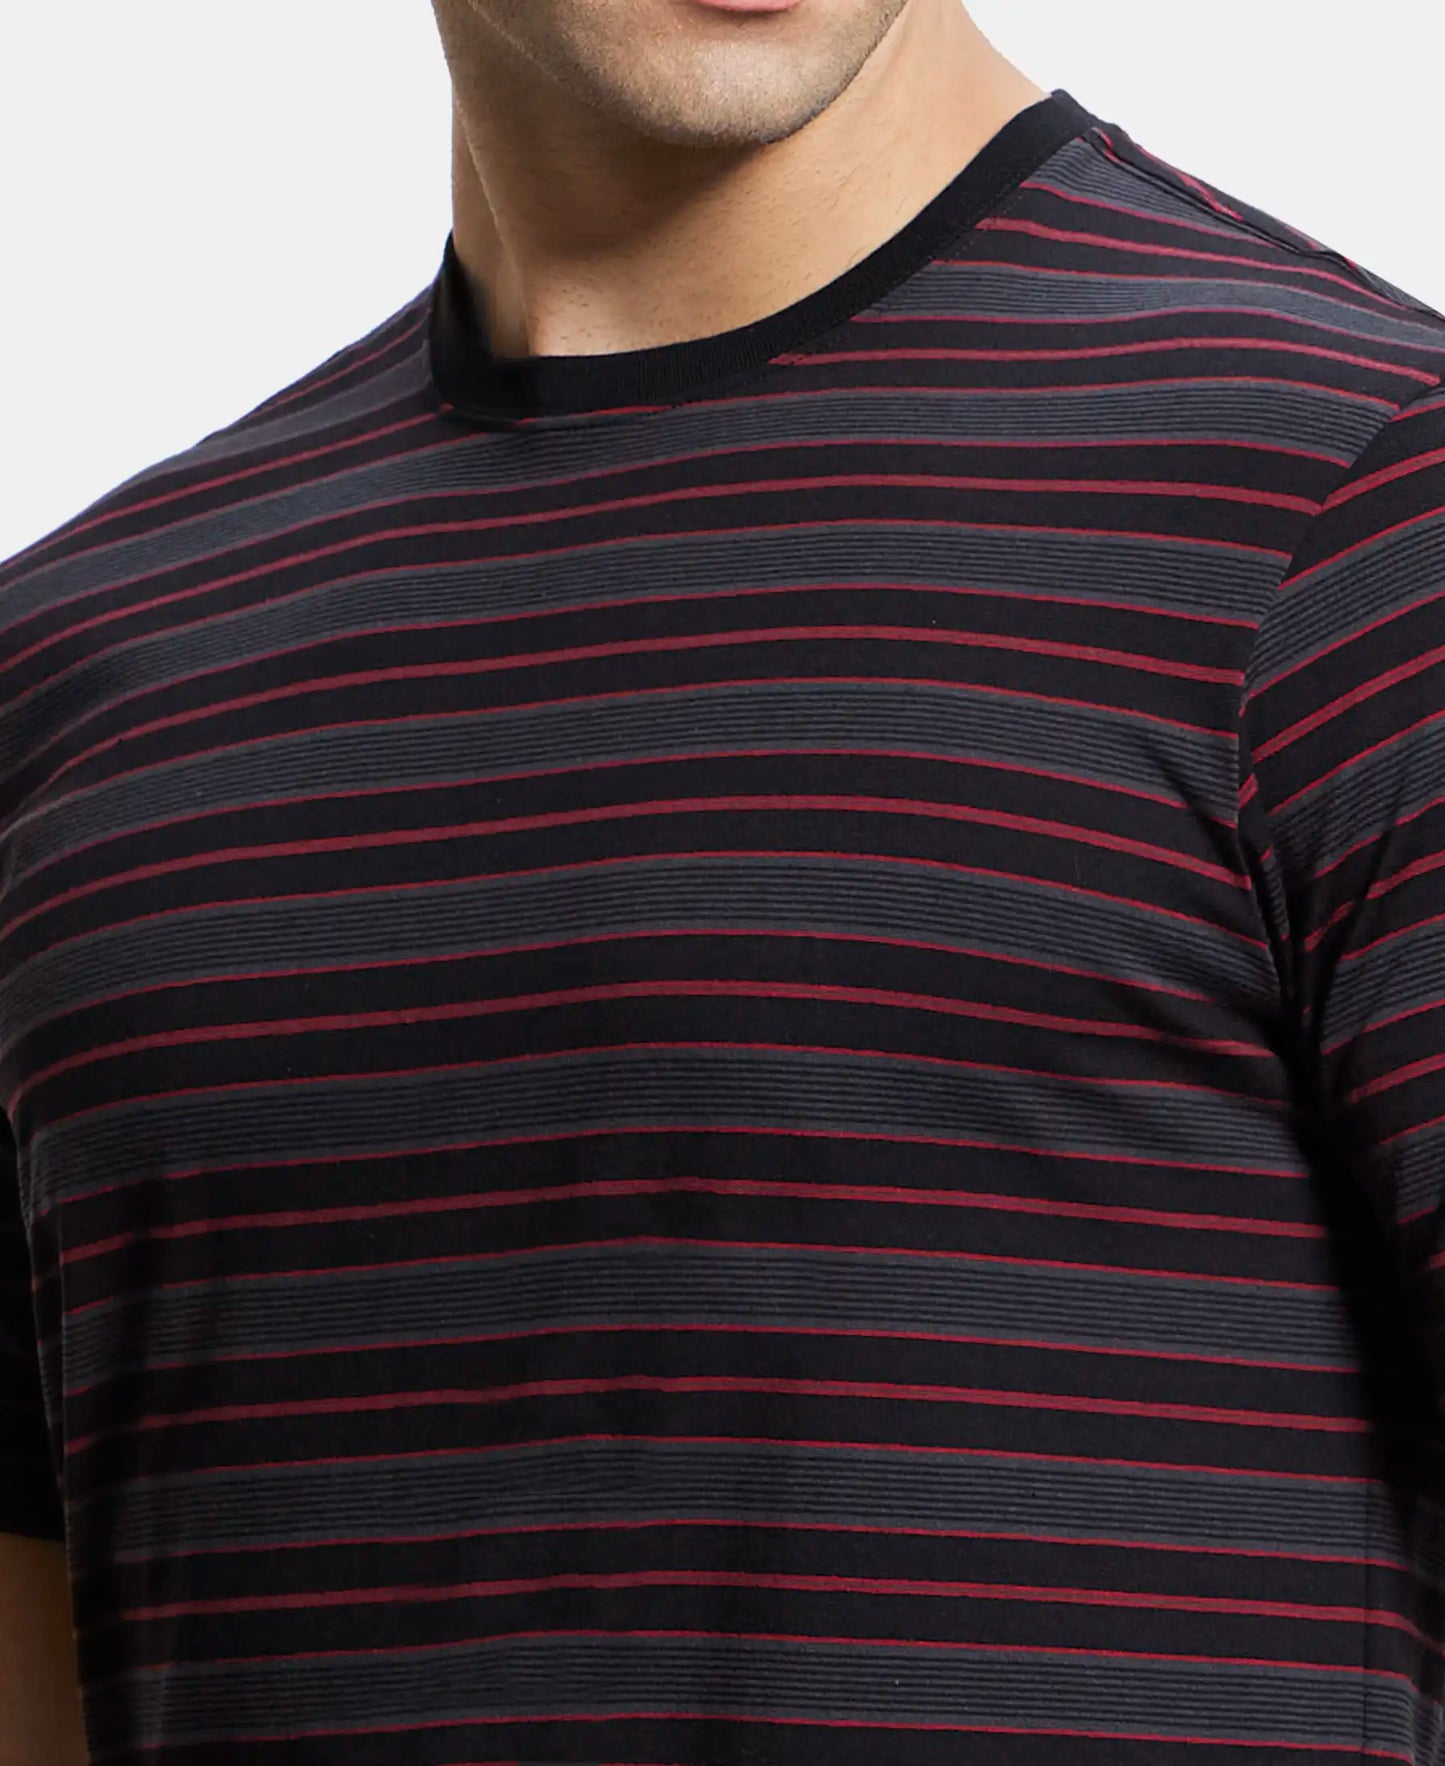 Super Combed Cotton Rich Striped Round Neck Half Sleeve T-Shirt - Black & Graphite-6